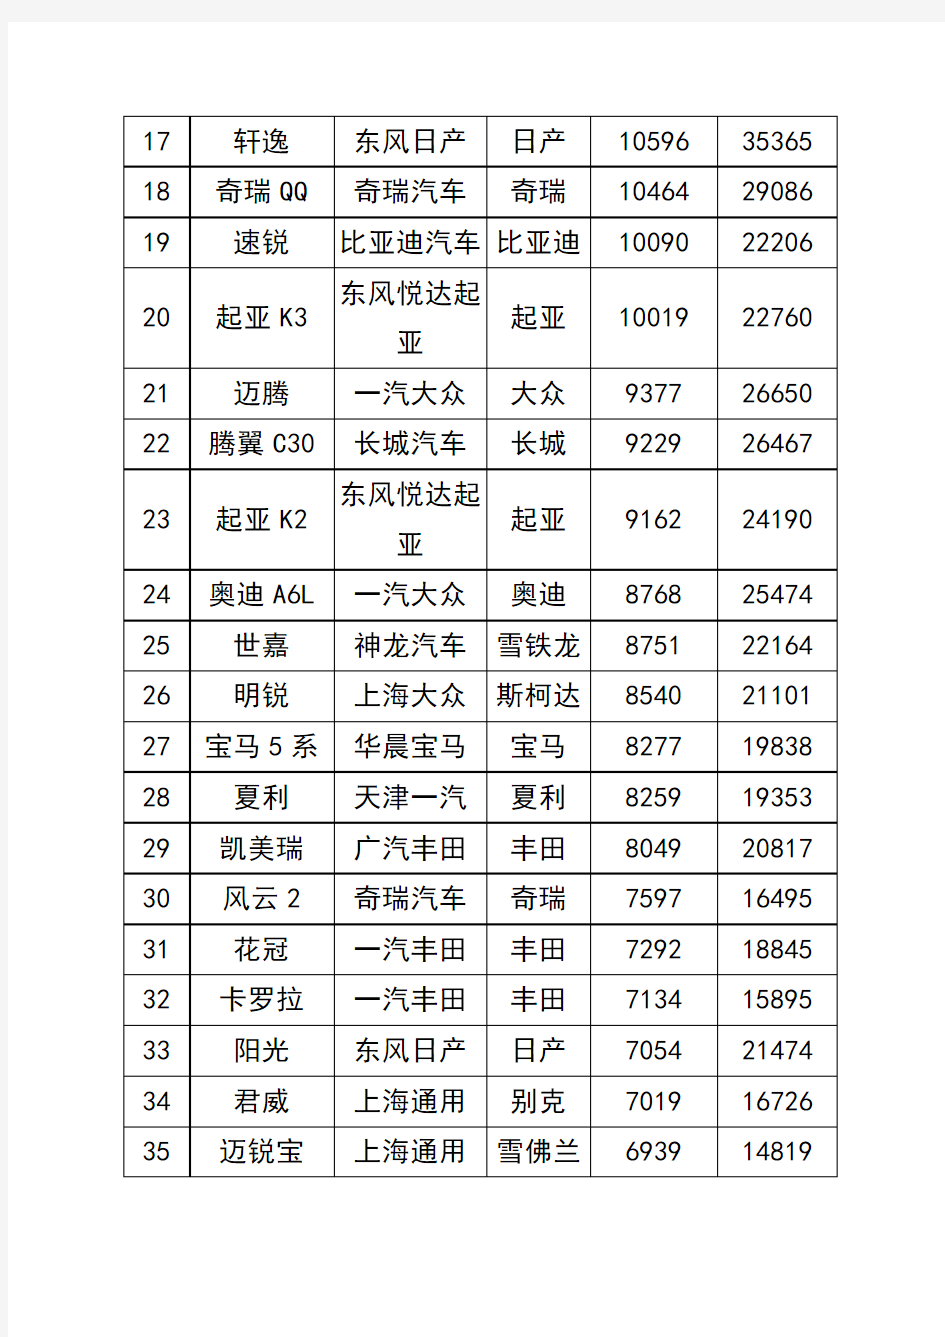 2013年2月中国汽车销量排行榜1-130名完整版